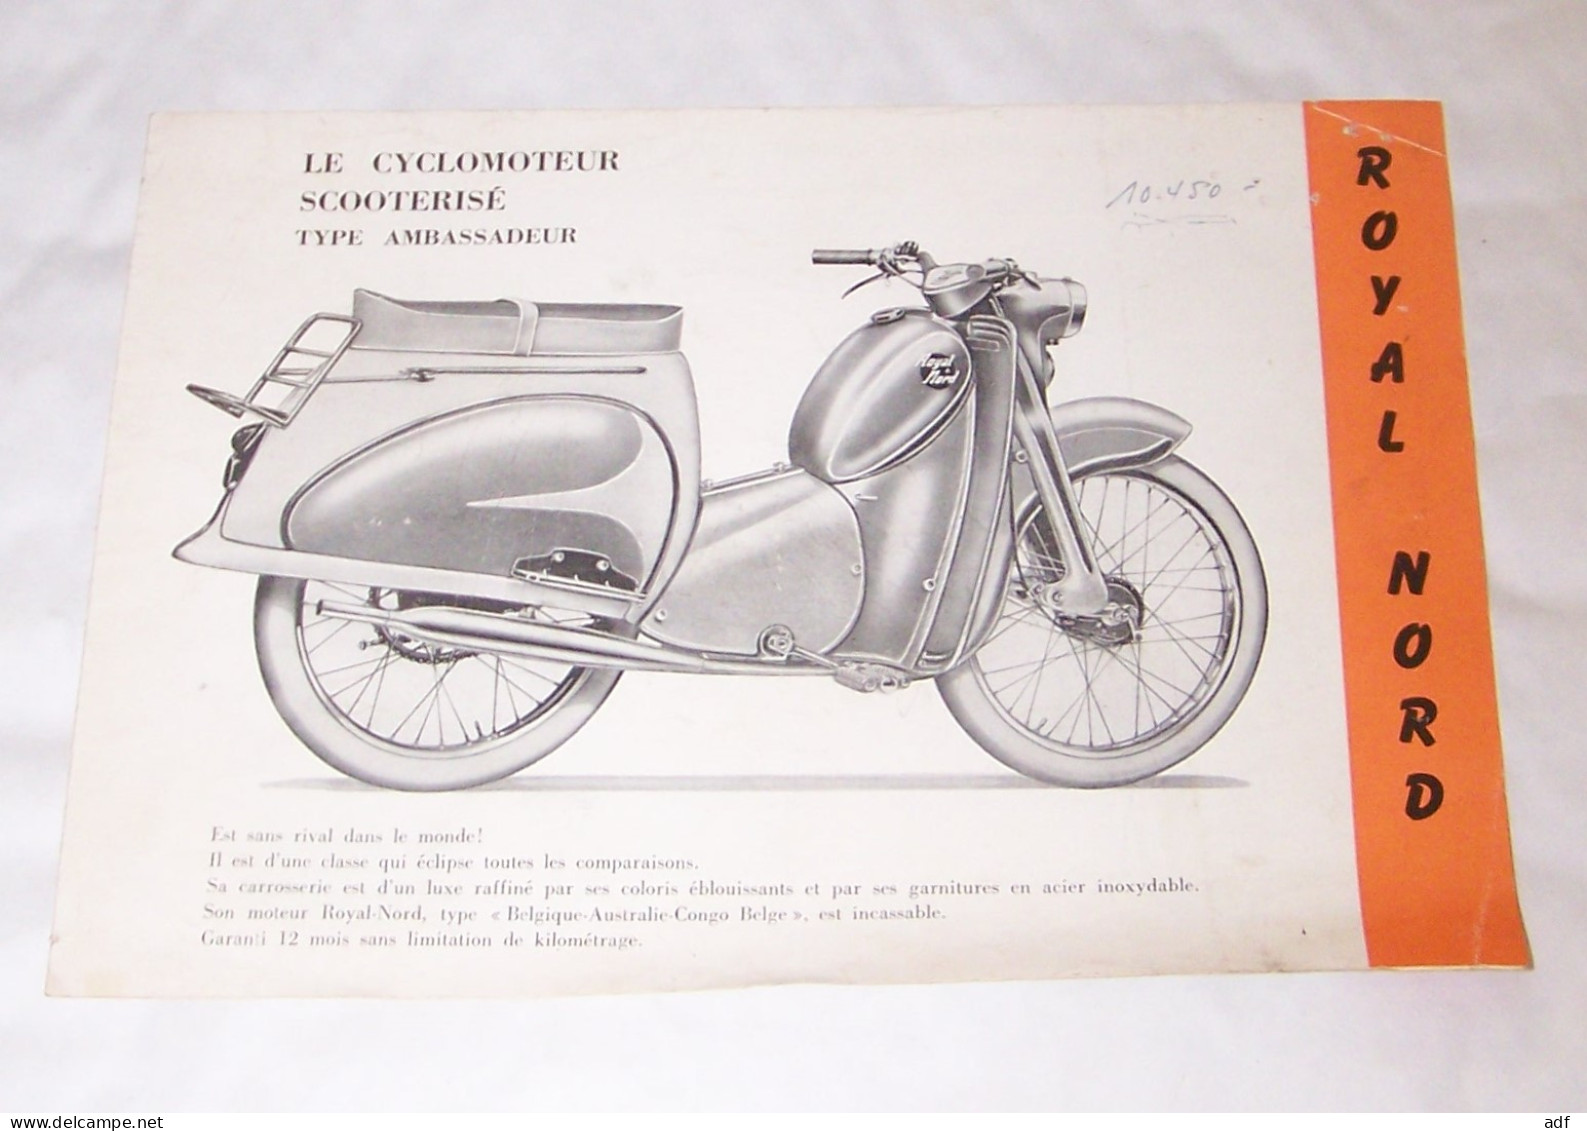 DEPLIANT PUB PUBLICITAIRE ROYAL NORD LE CYCLOMOTEUR CYCLO MOTEUR SCOOTERISE TYPE AMBASSADEUR, SCOOTER, SUPERLUXE 1959 - Motor Bikes